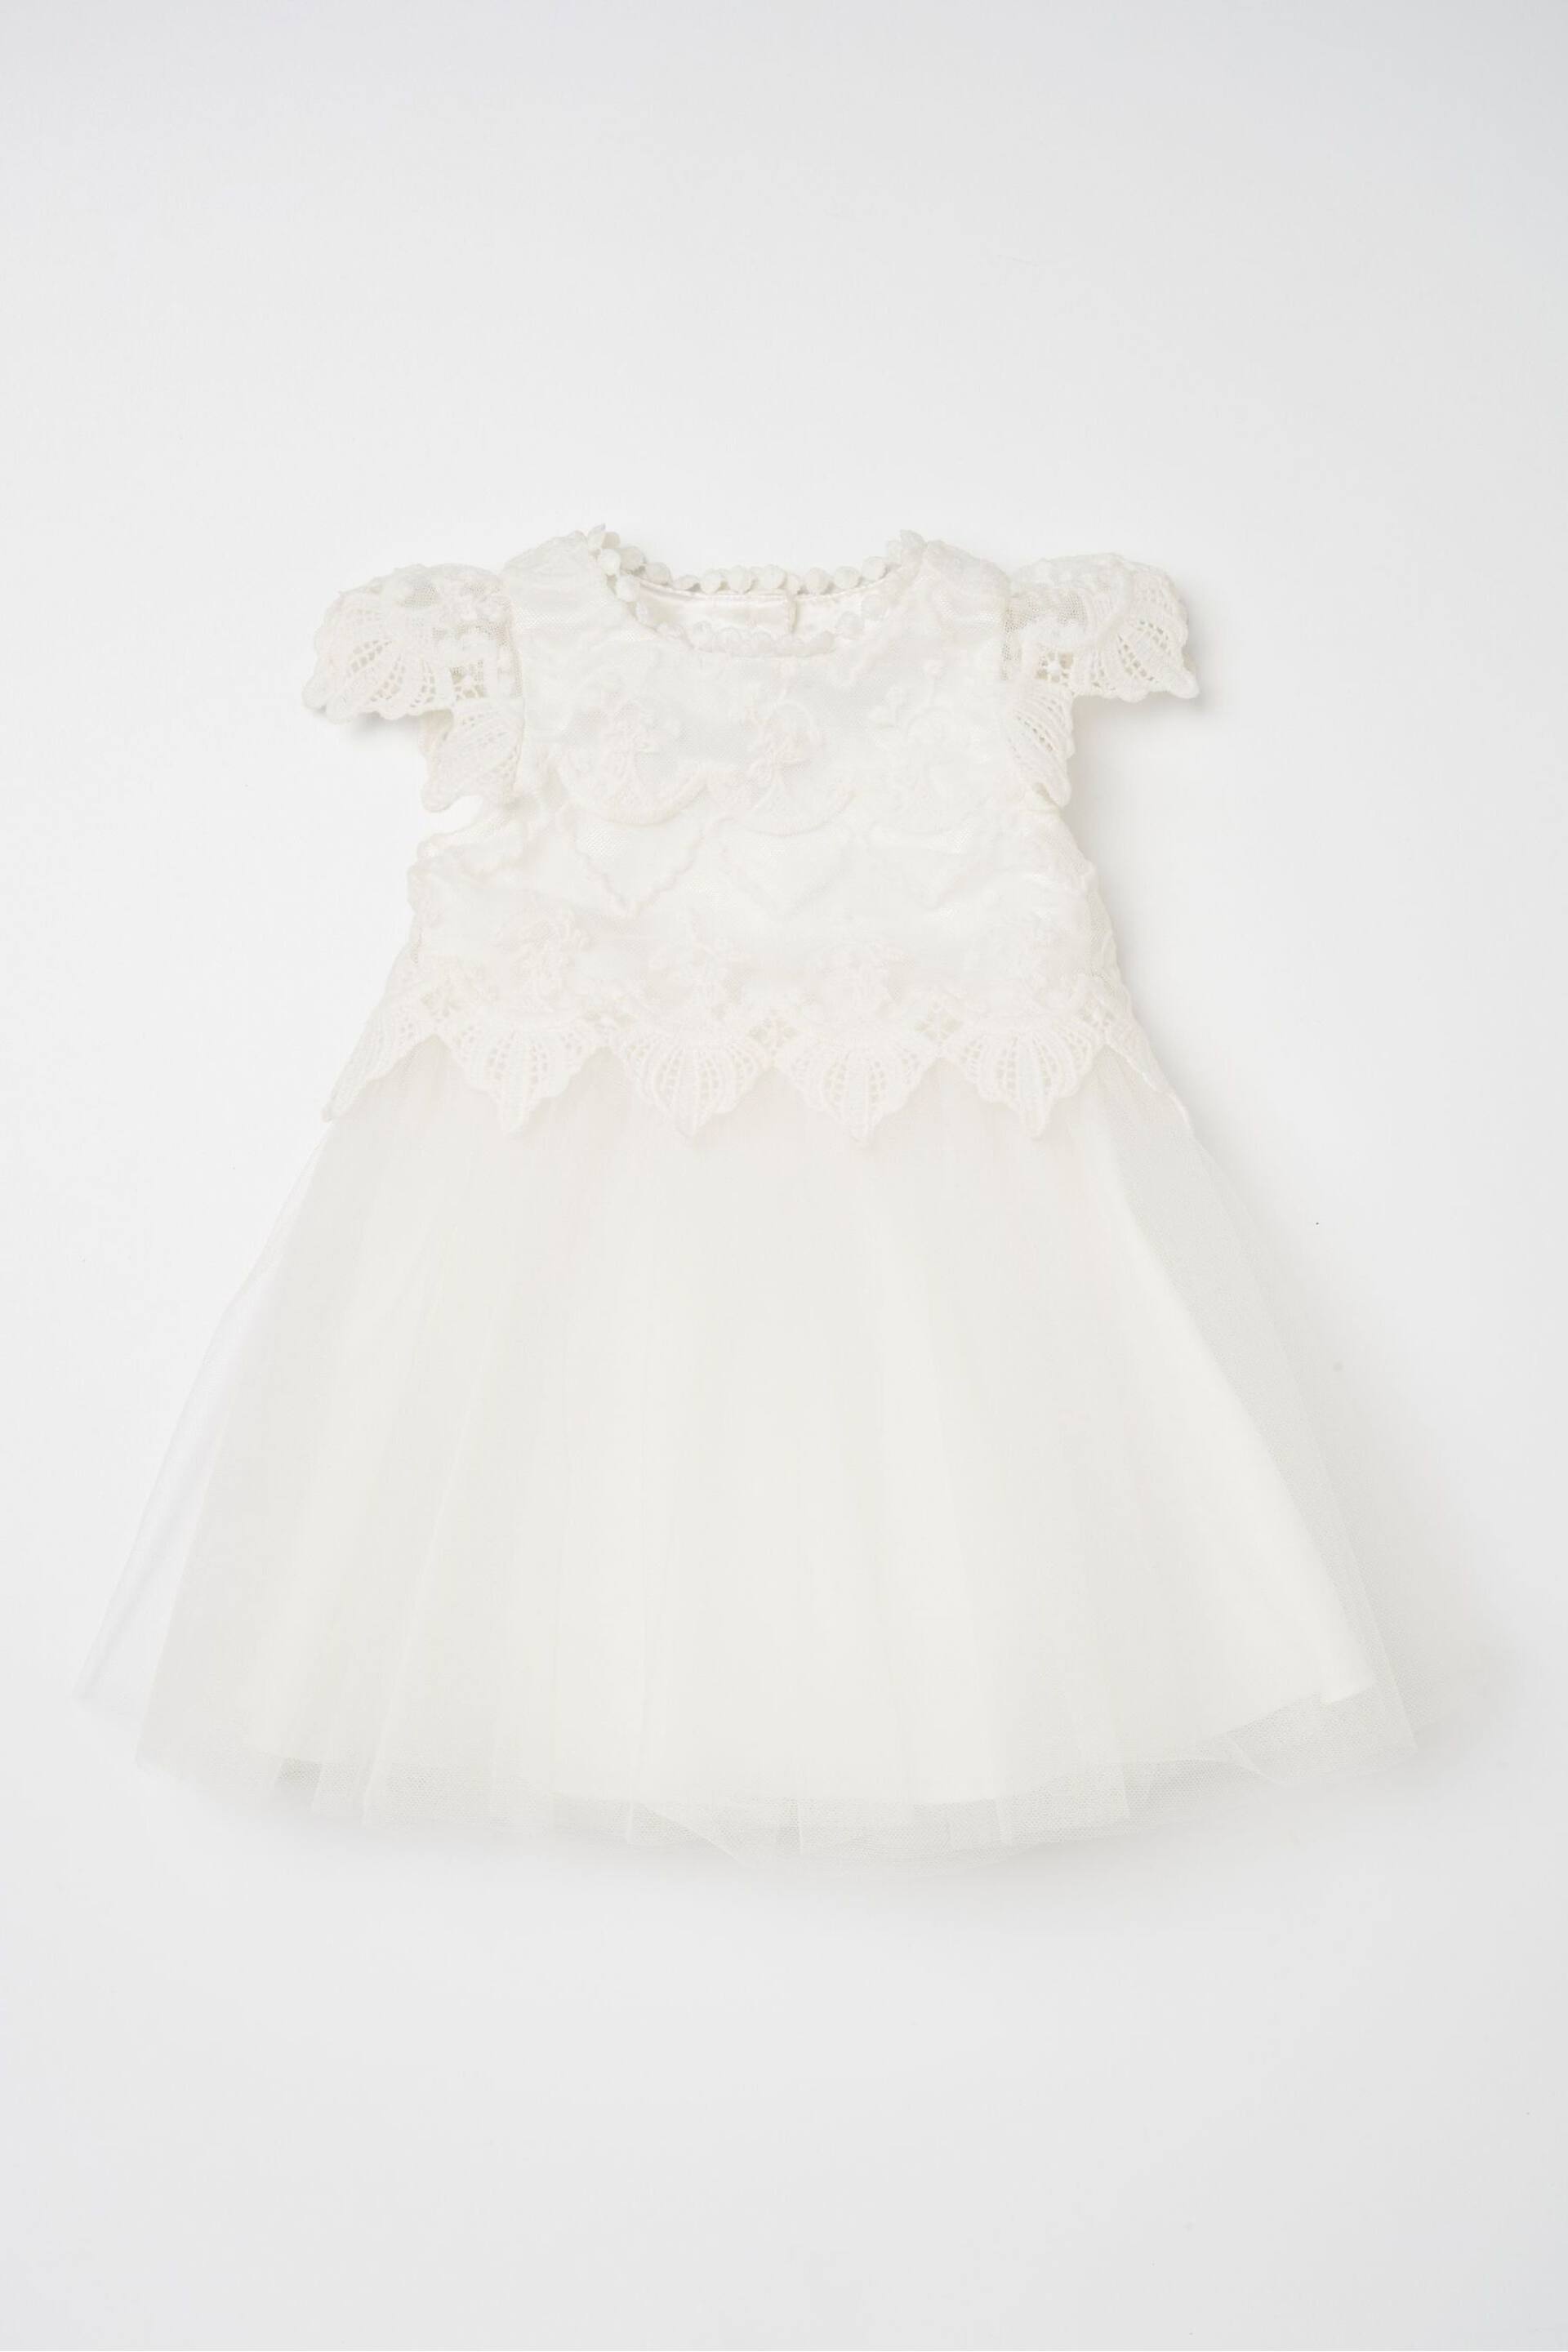 Angel & Rocket White Lace Bodice Baby Dress - Image 2 of 4